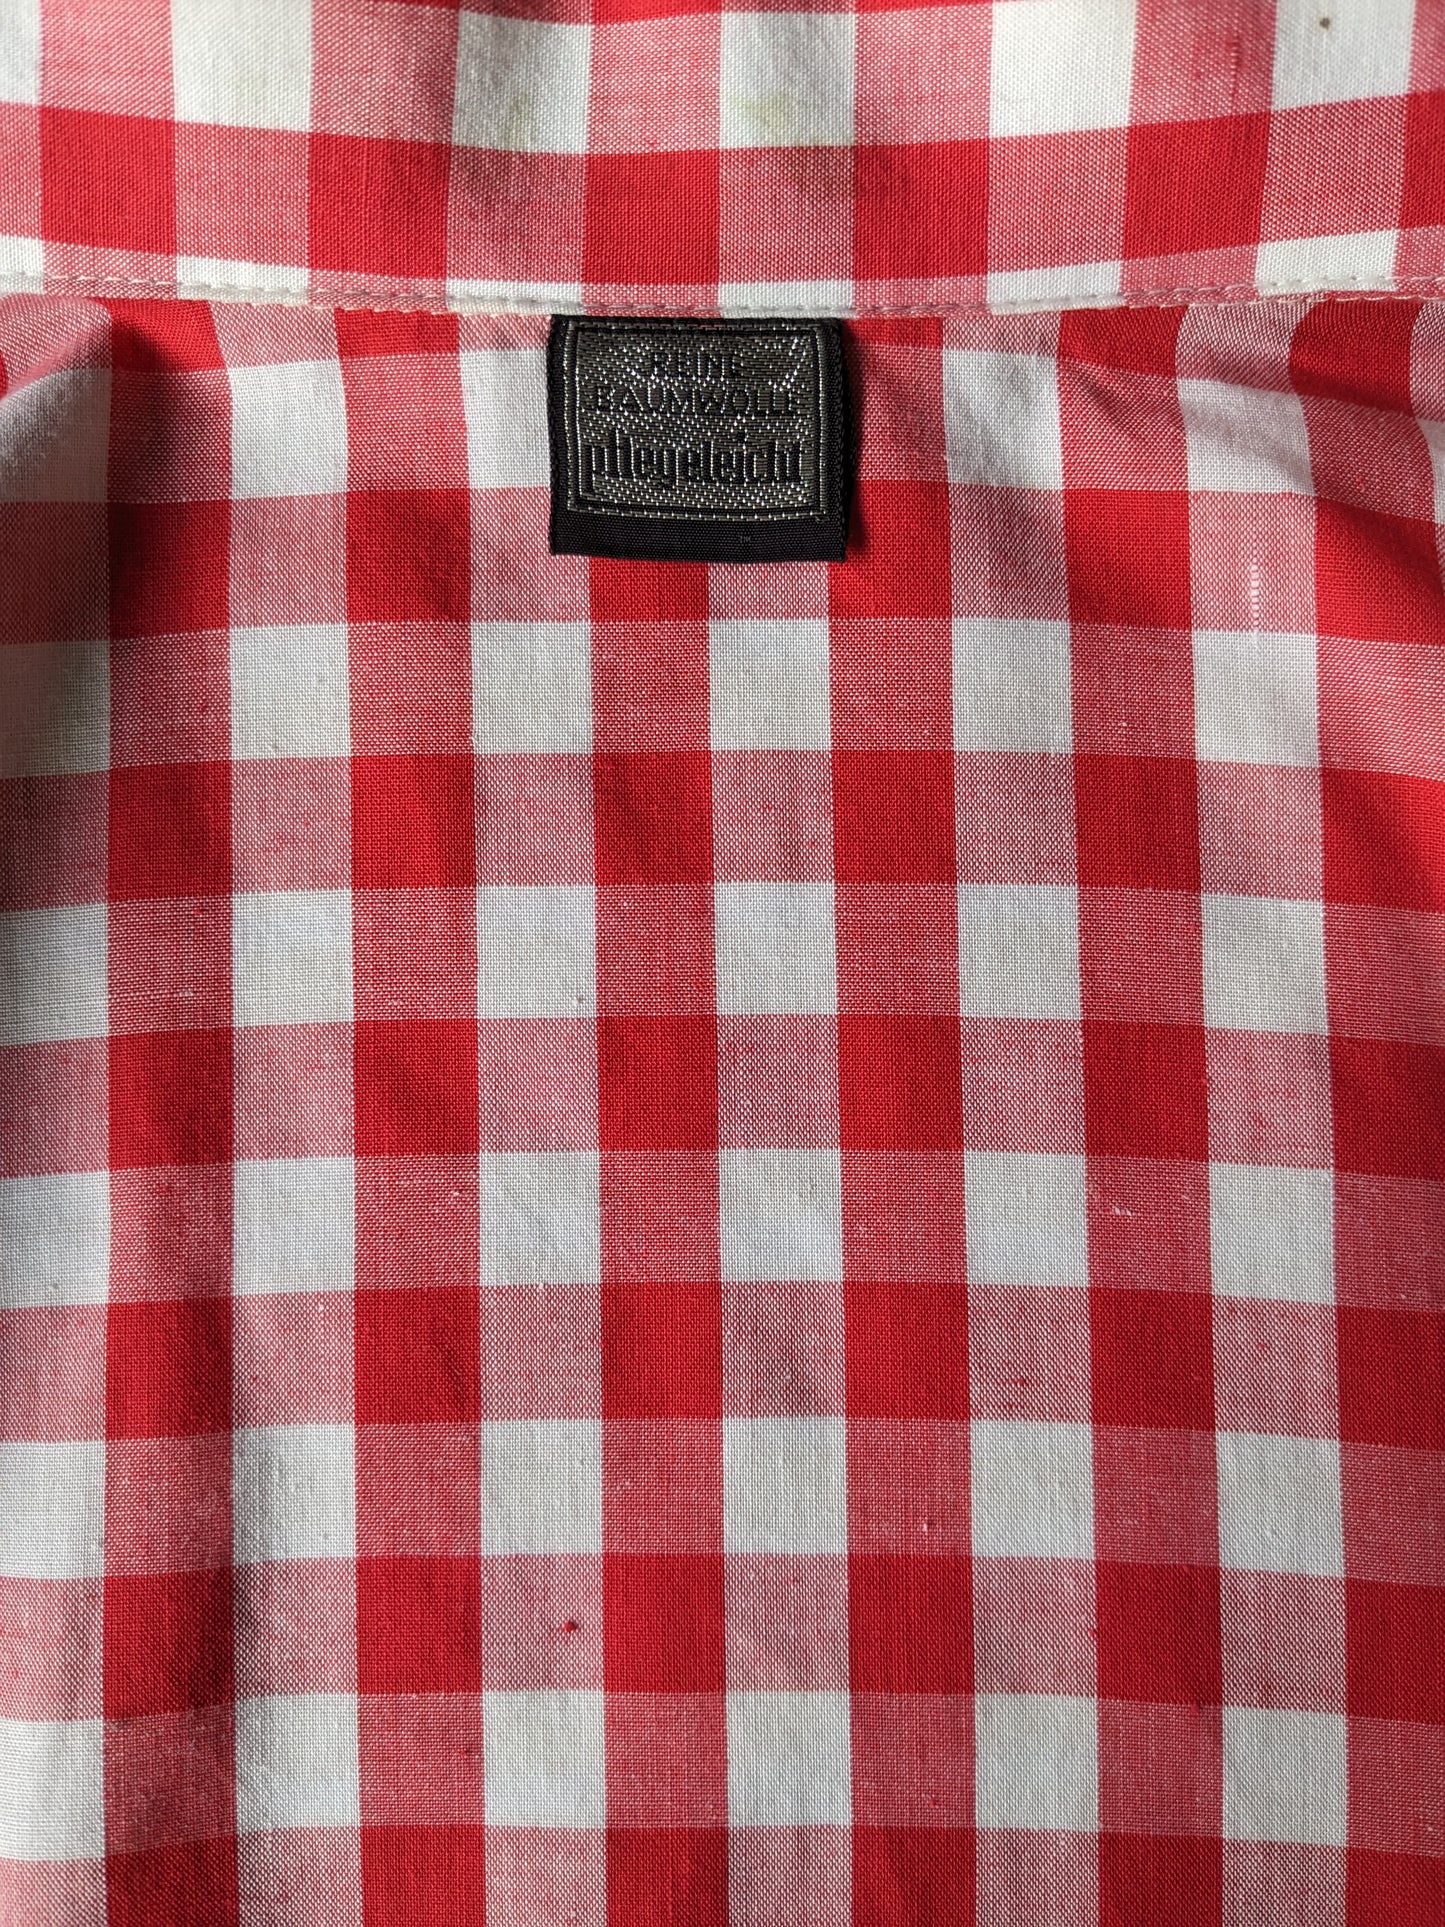 Camisa de los 70 vintage. Red blanco a cuadros. Tamaño xl.